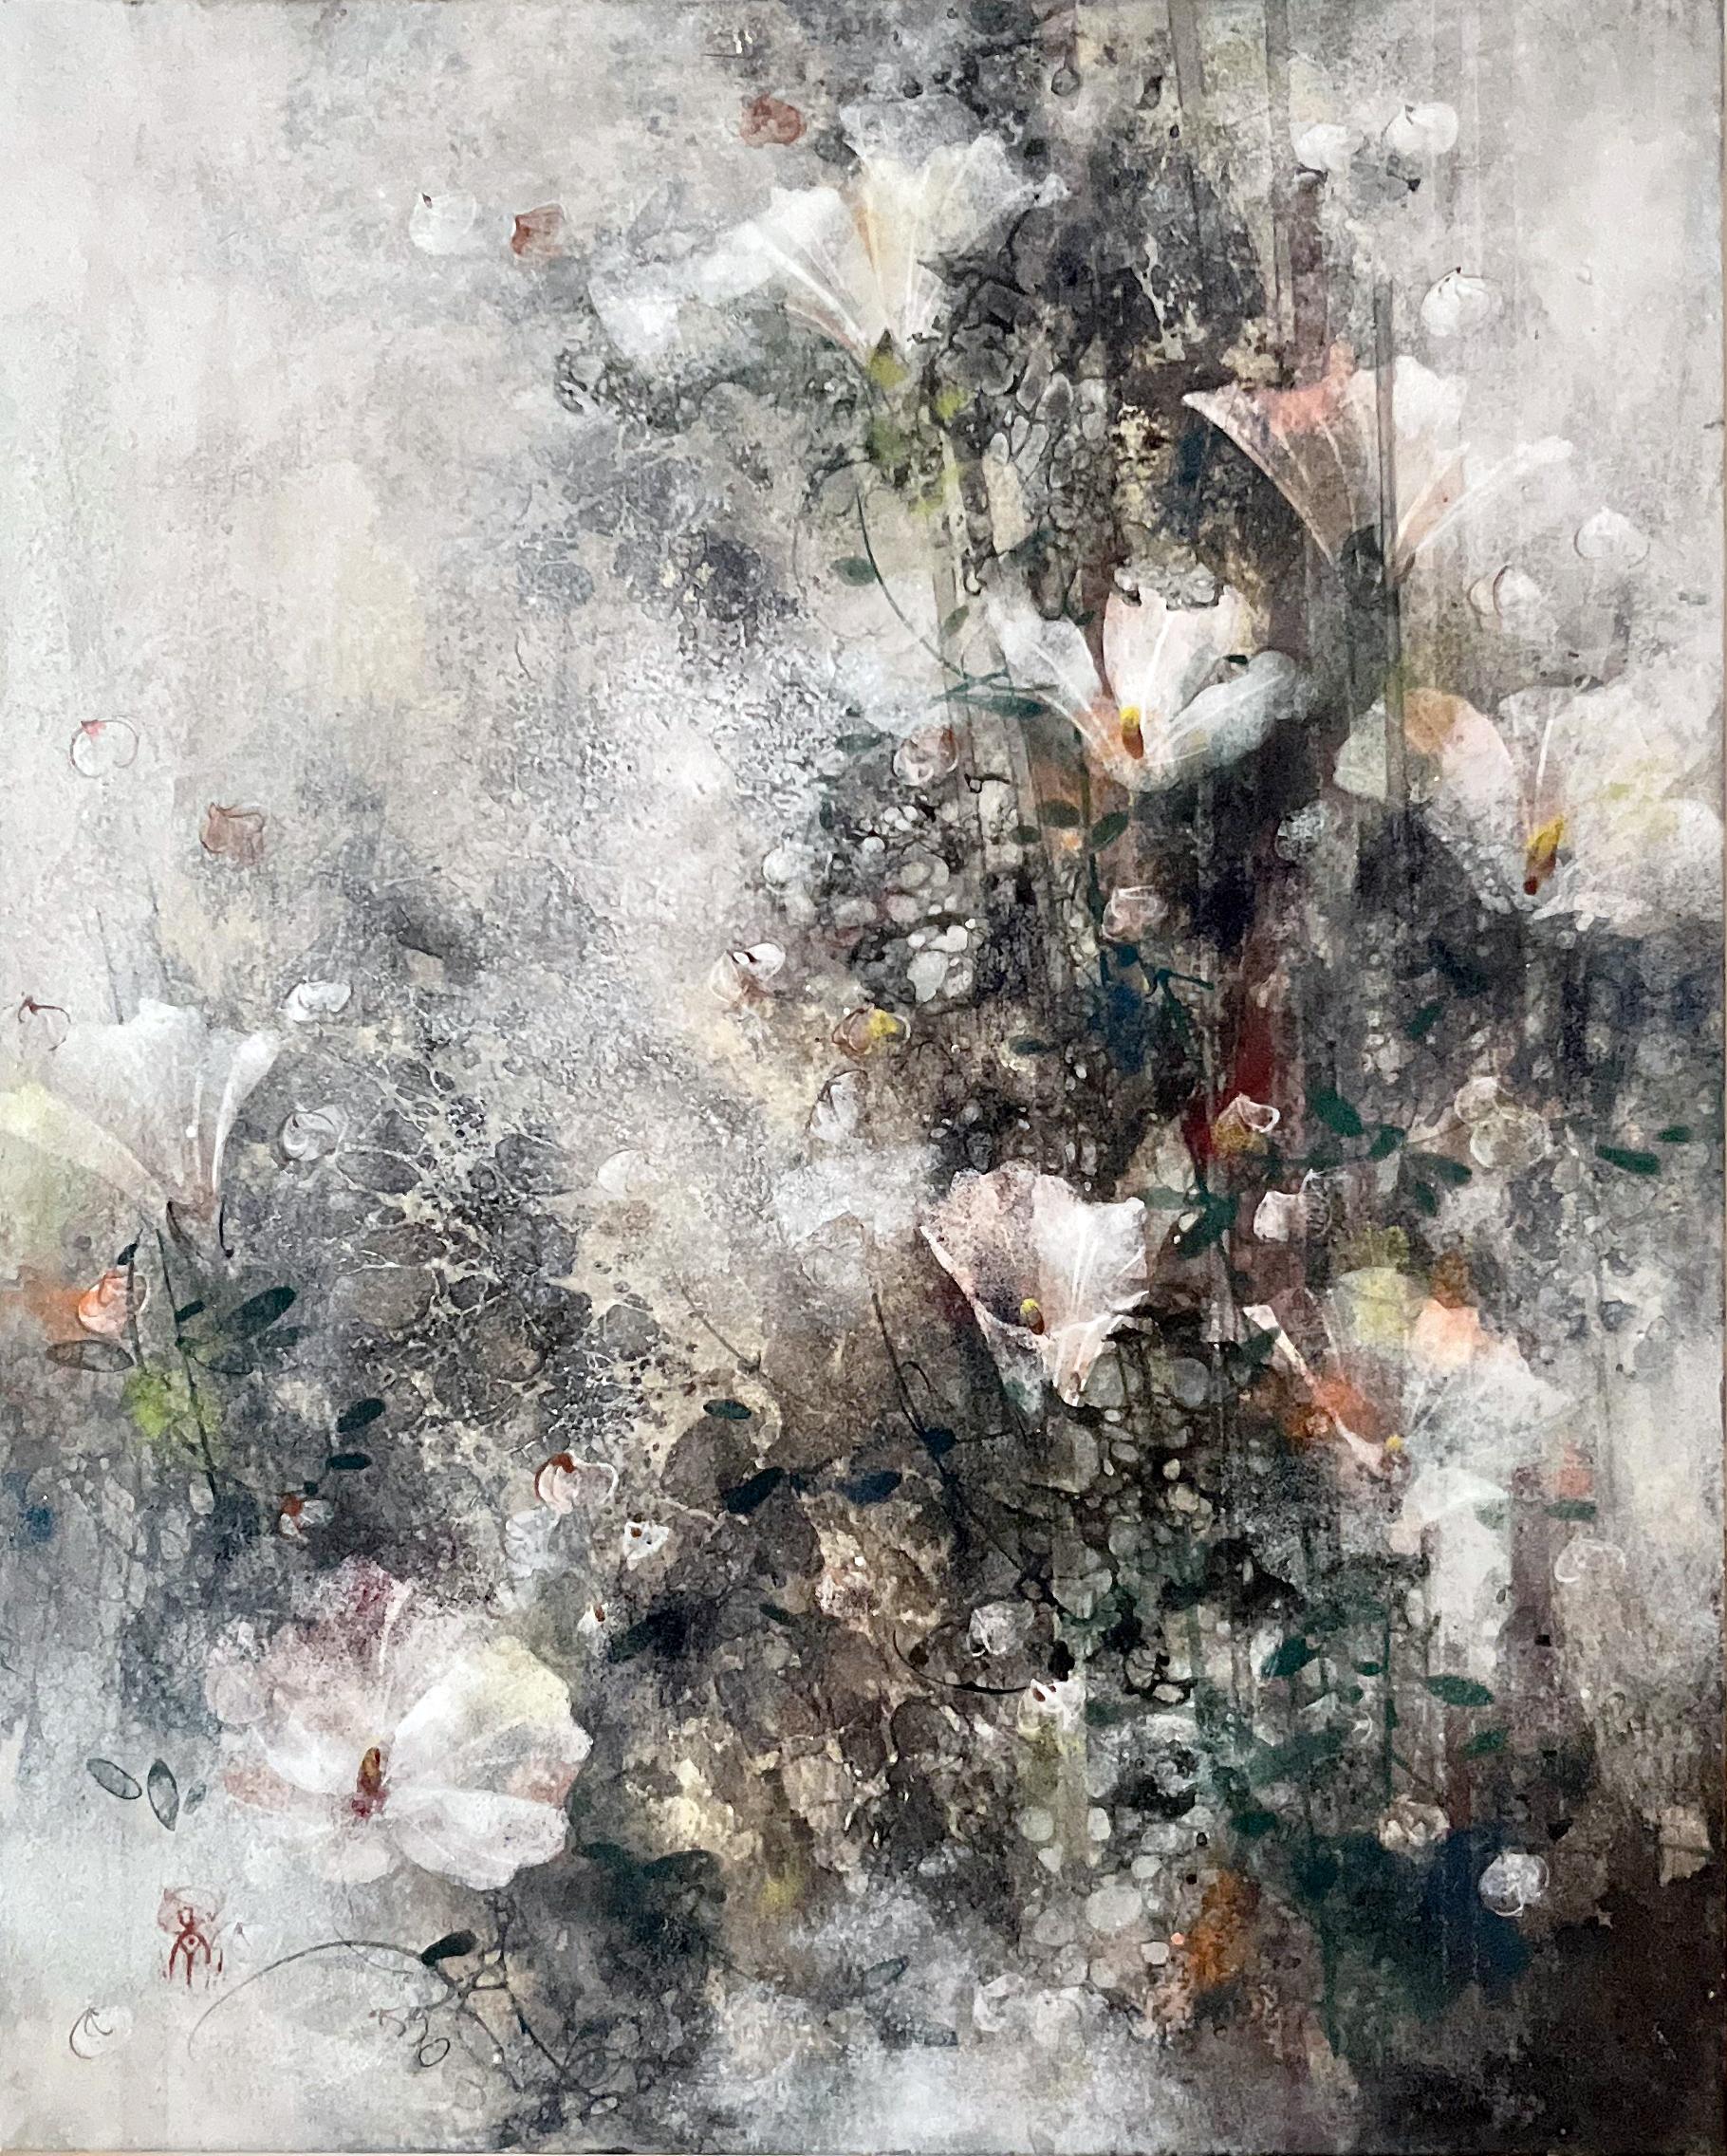 Champ de lin par Chen Yiching - Peinture nihonga contemporaine, fleurs, pigments